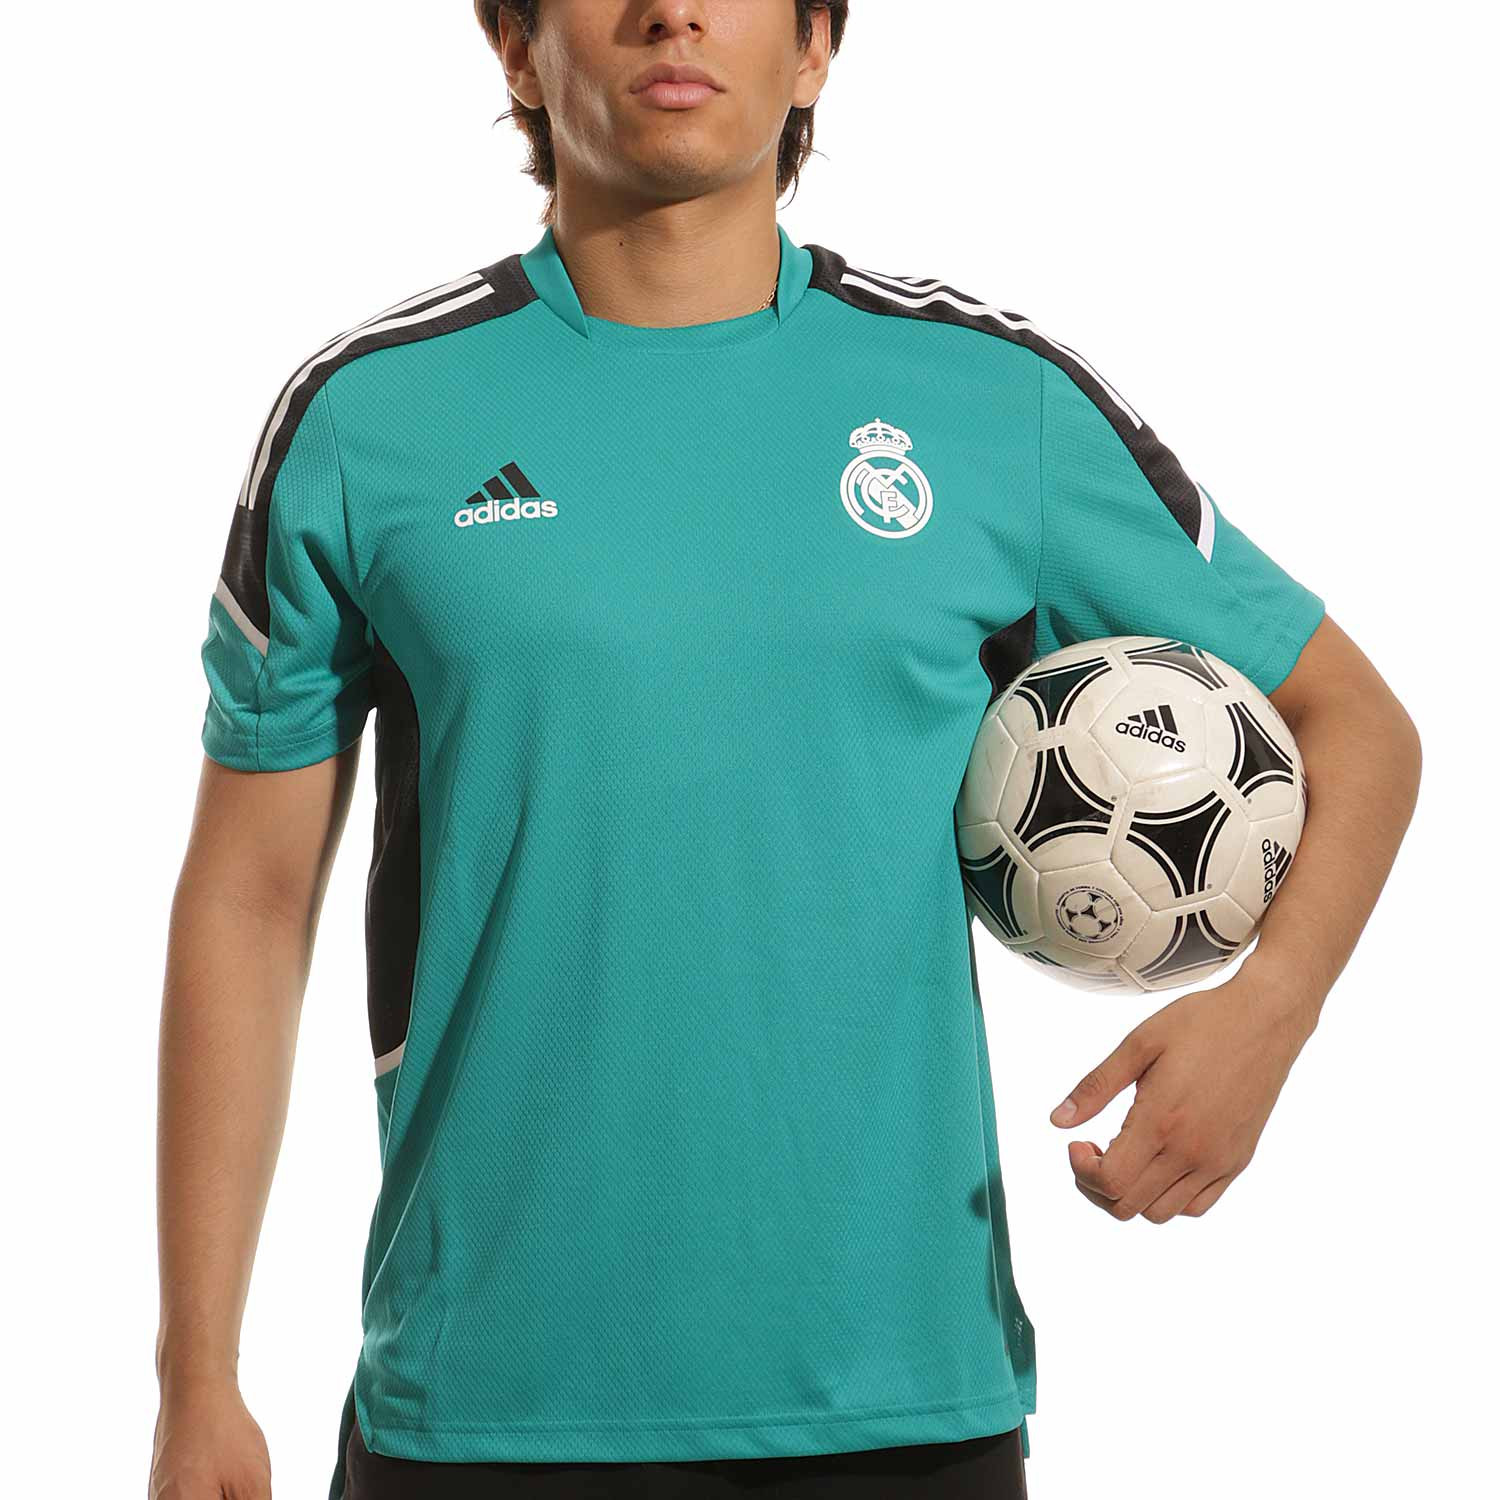 Balón de fútbol real Madrid auténtica Adidas 2017/18 Color Blanco